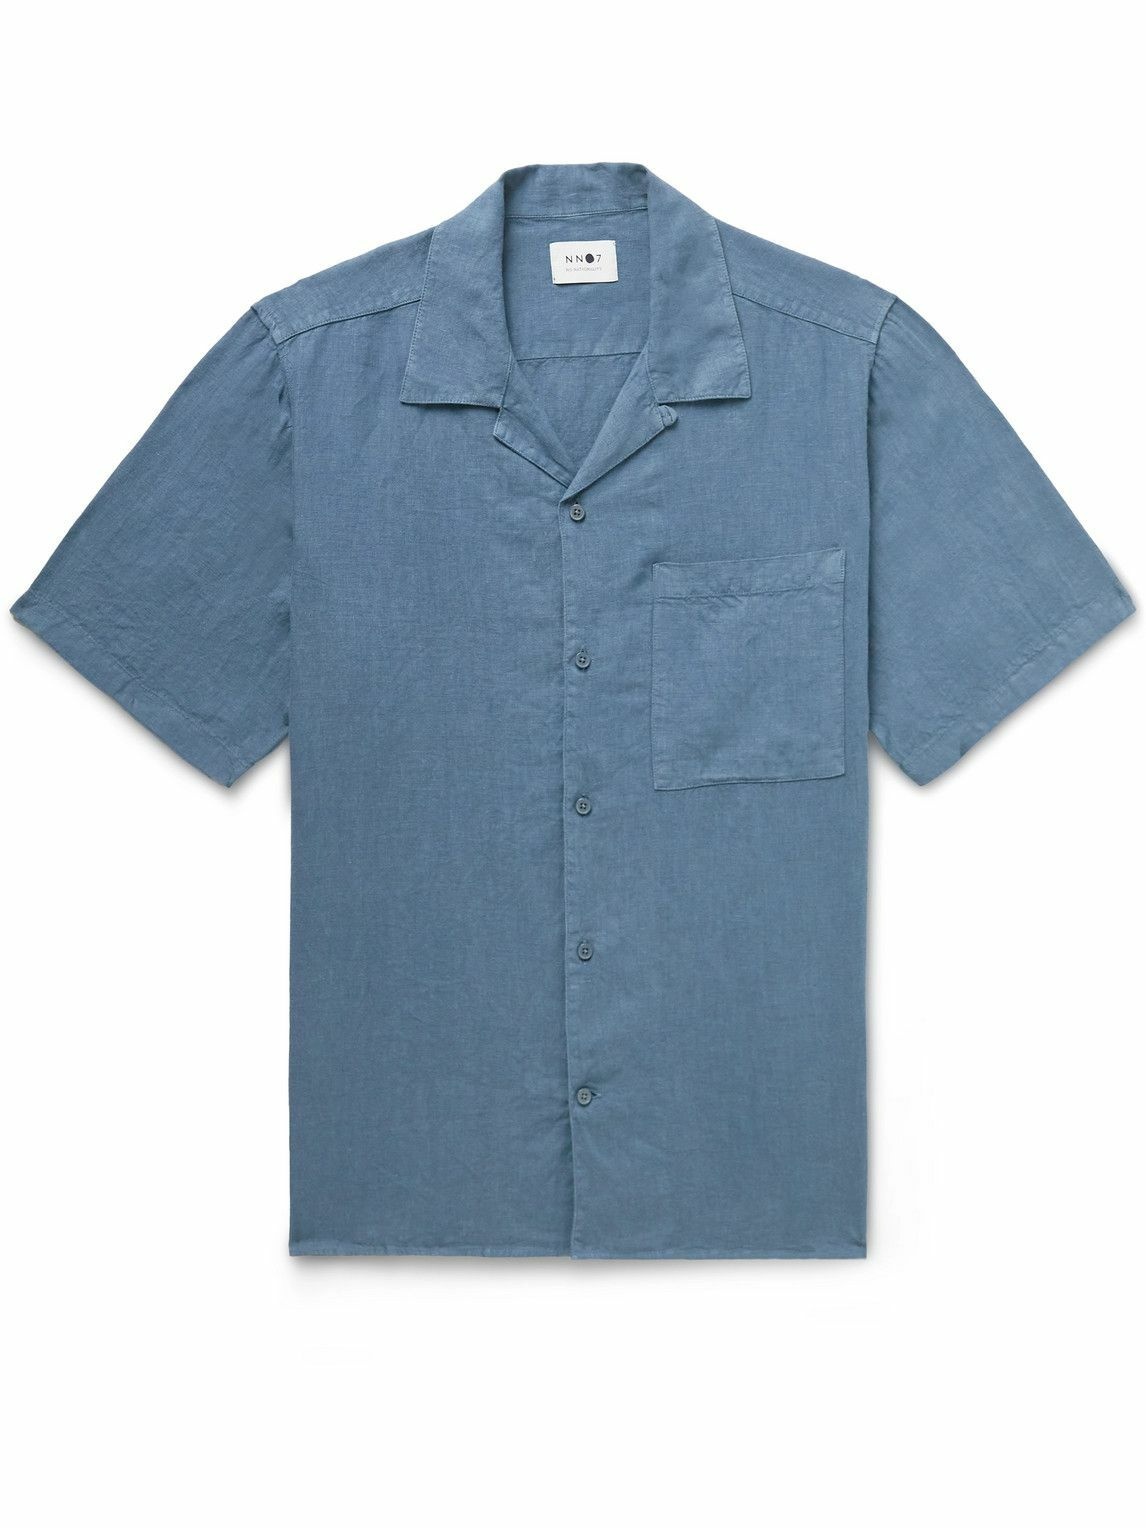 NN07 - Julio 5706 Convertible-Collar Linen Shirt - Blue NN07